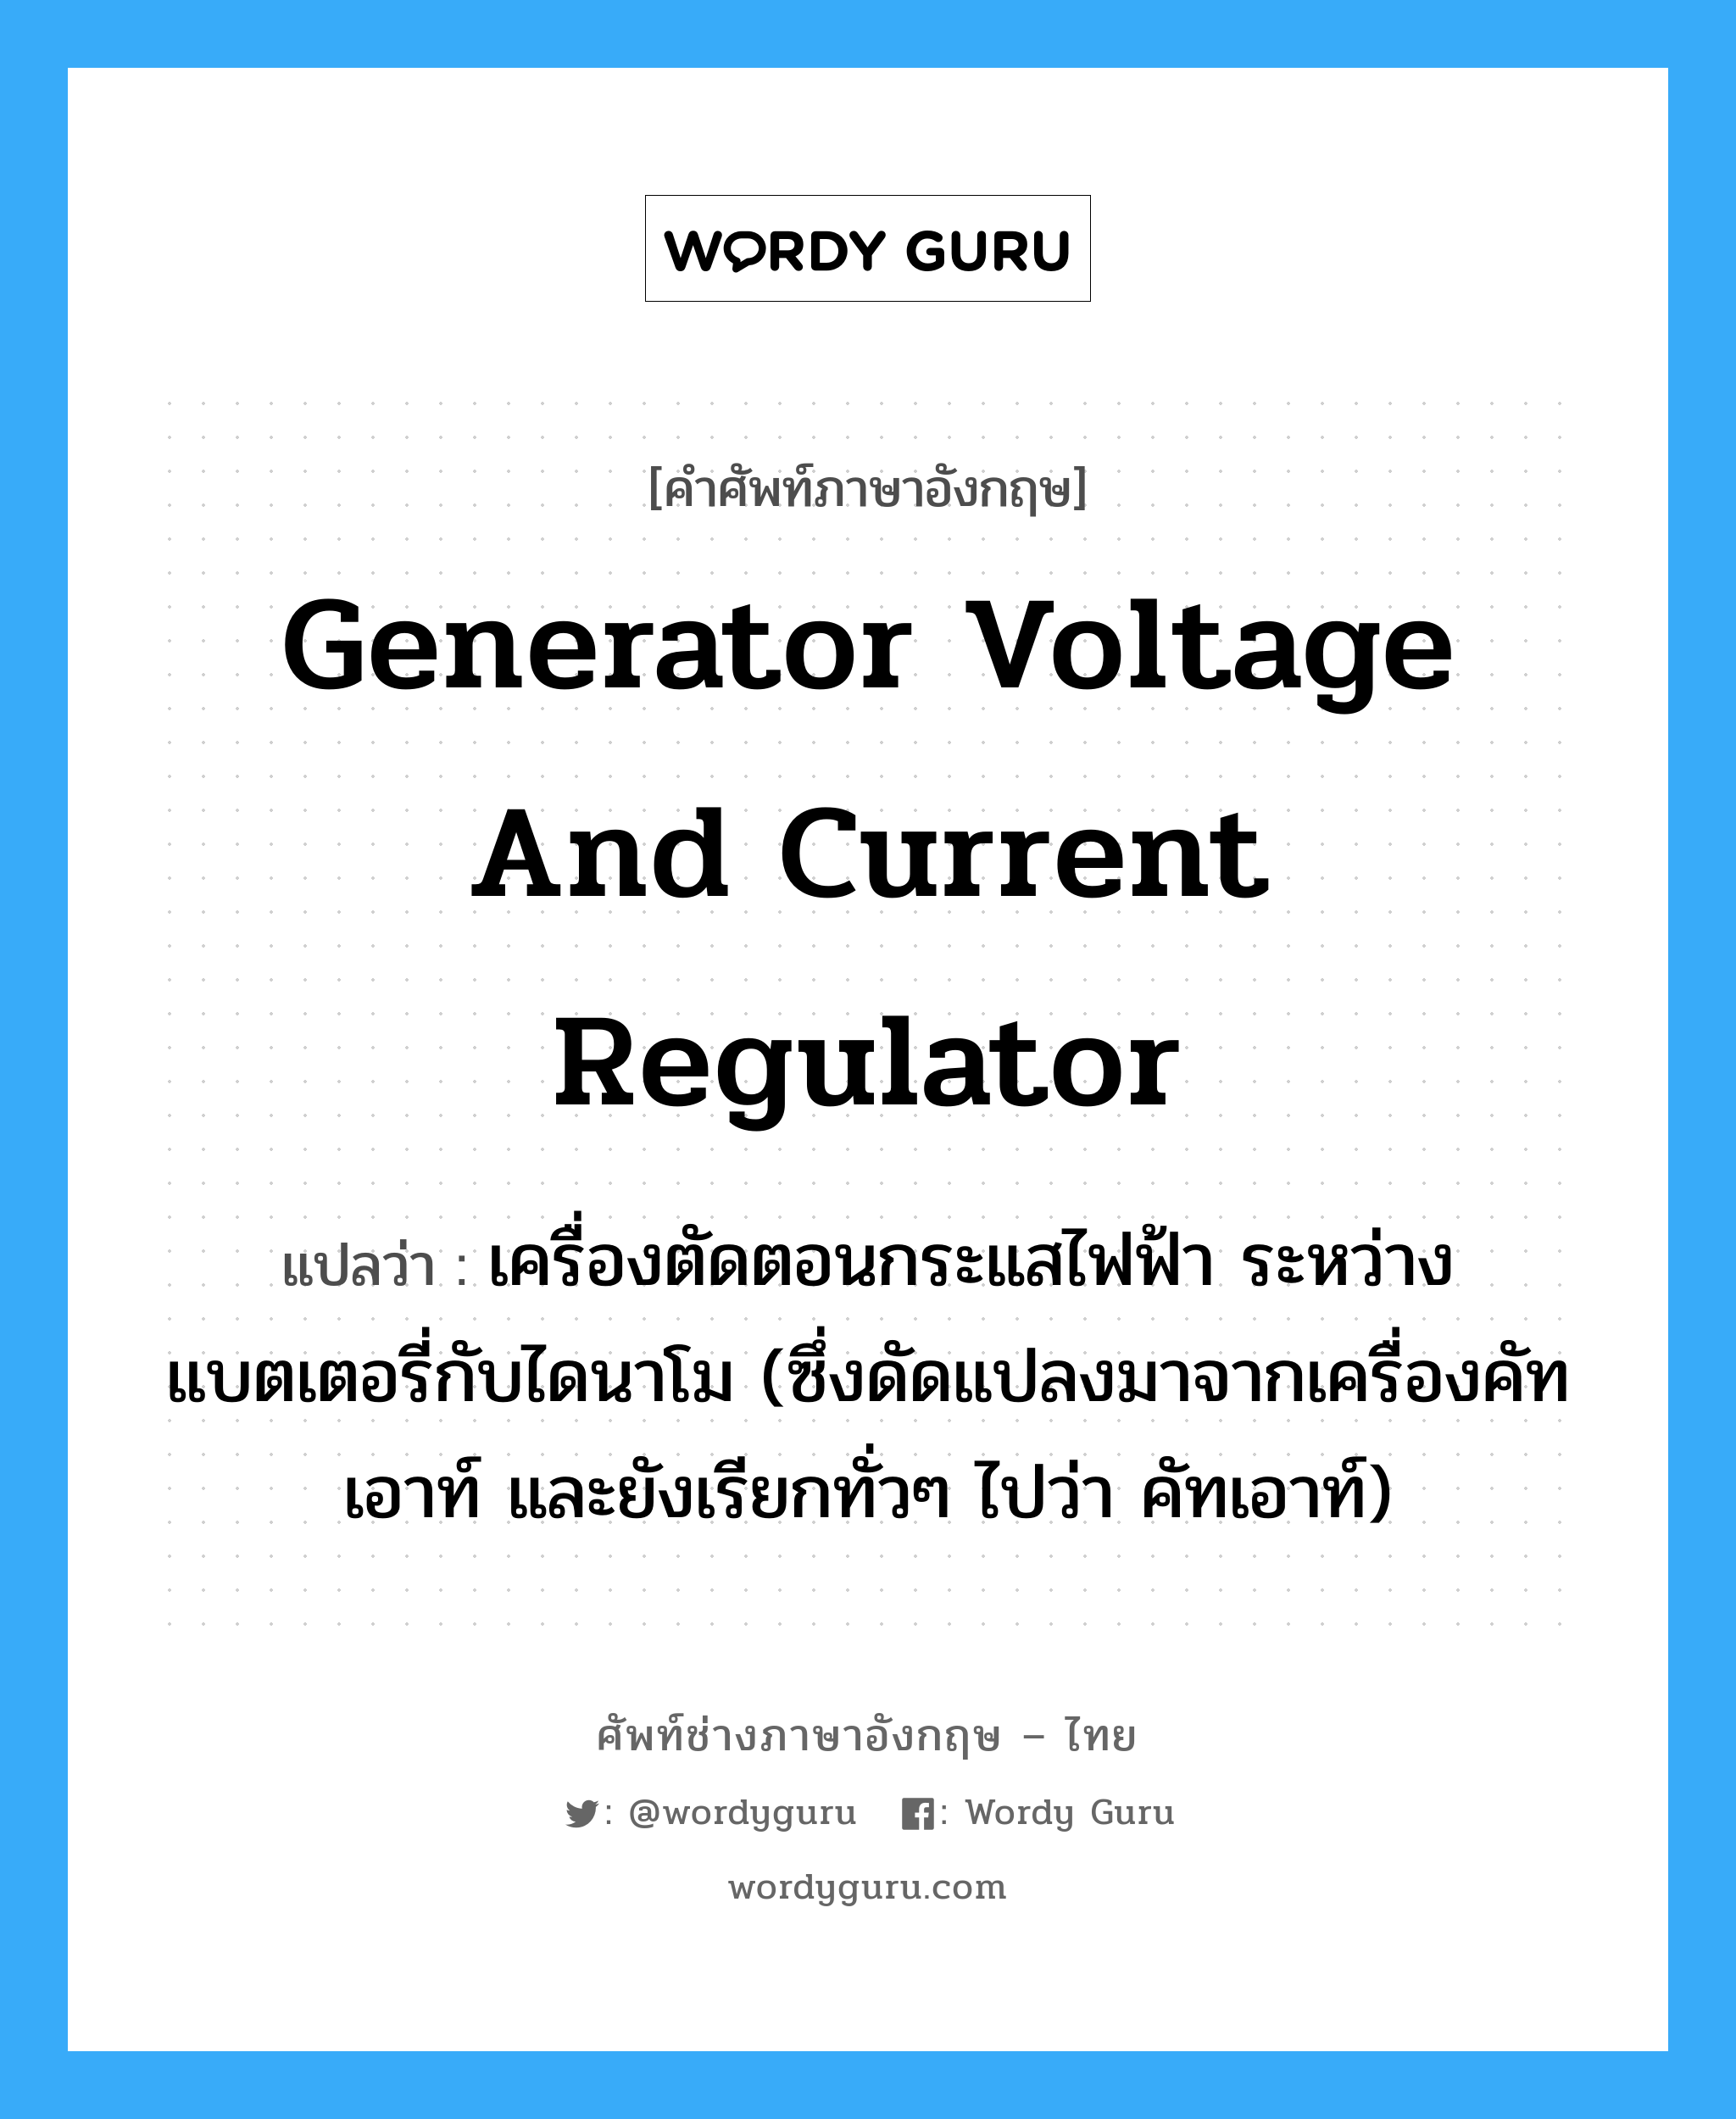 generator voltage and current regulator แปลว่า?, คำศัพท์ช่างภาษาอังกฤษ - ไทย generator voltage and current regulator คำศัพท์ภาษาอังกฤษ generator voltage and current regulator แปลว่า เครื่องตัดตอนกระแสไฟฟ้า ระหว่างแบตเตอรี่กับไดนาโม (ซึ่งดัดแปลงมาจากเครื่องคัทเอาท์ และยังเรียกทั่วๆ ไปว่า คัทเอาท์)